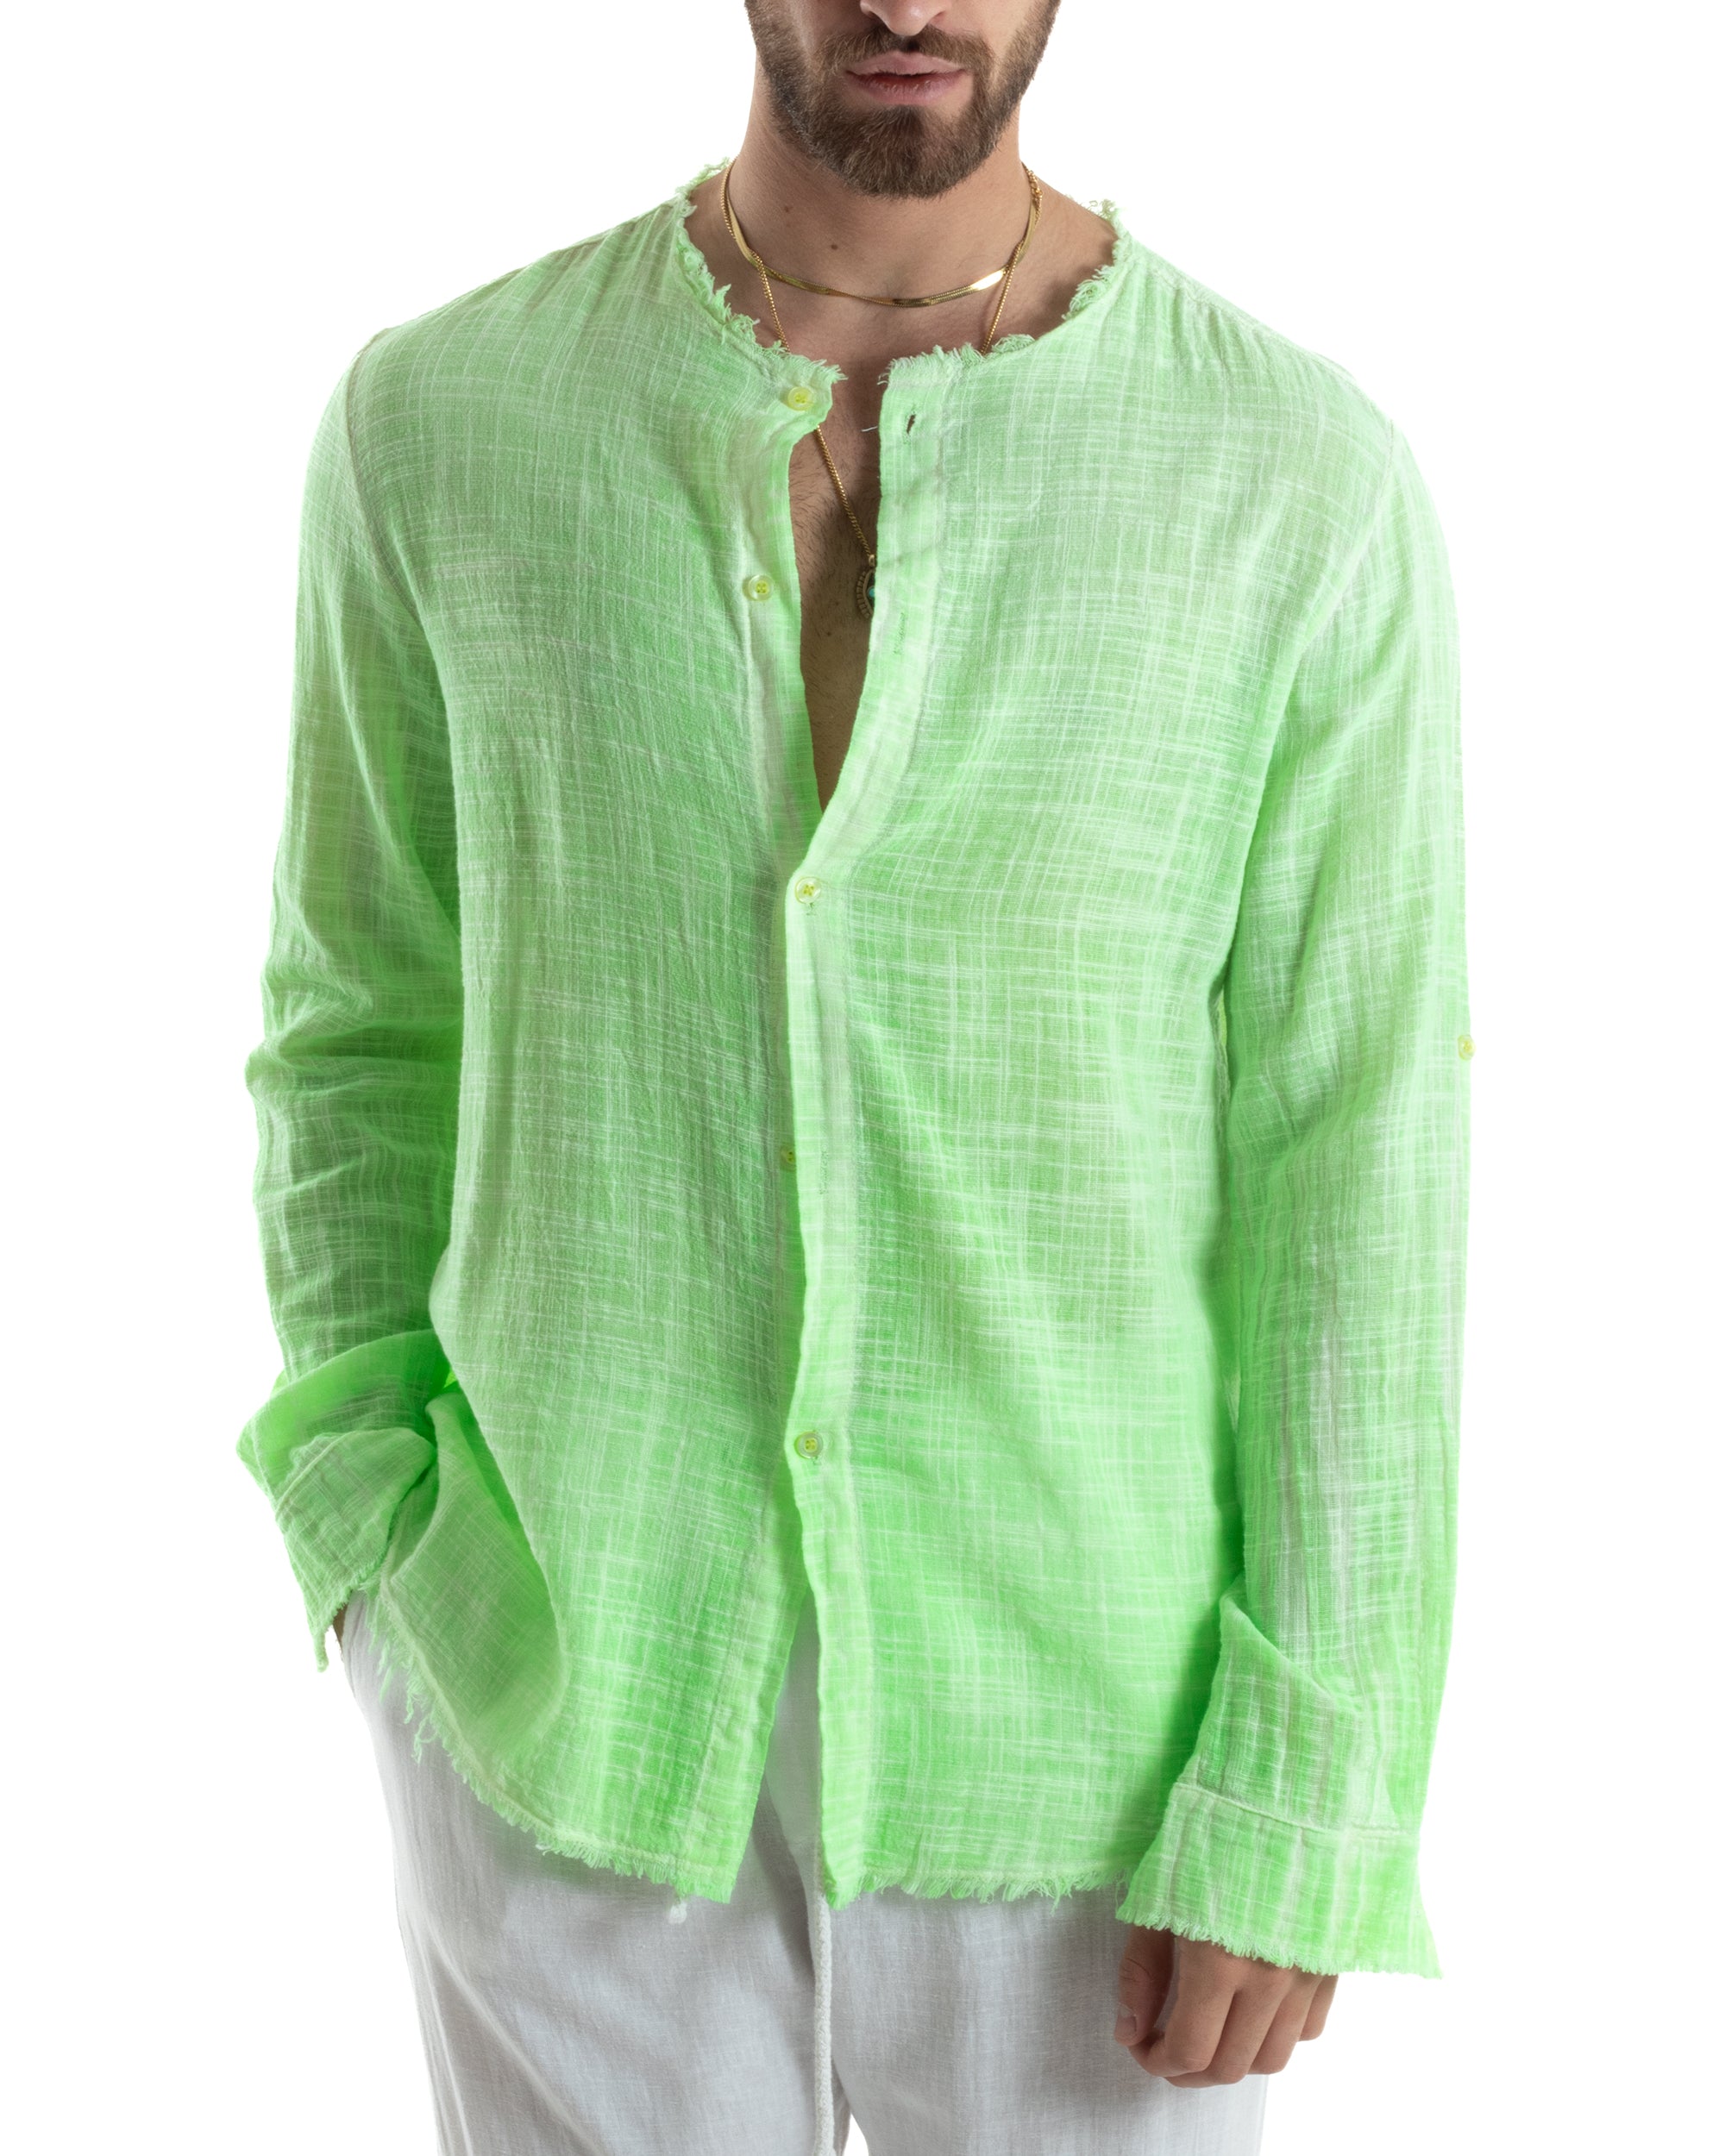 Camicia Uomo Sfrangiata Cotone Lino Manica Lunga Tinta Unita Verde GIOSAL-C2836A